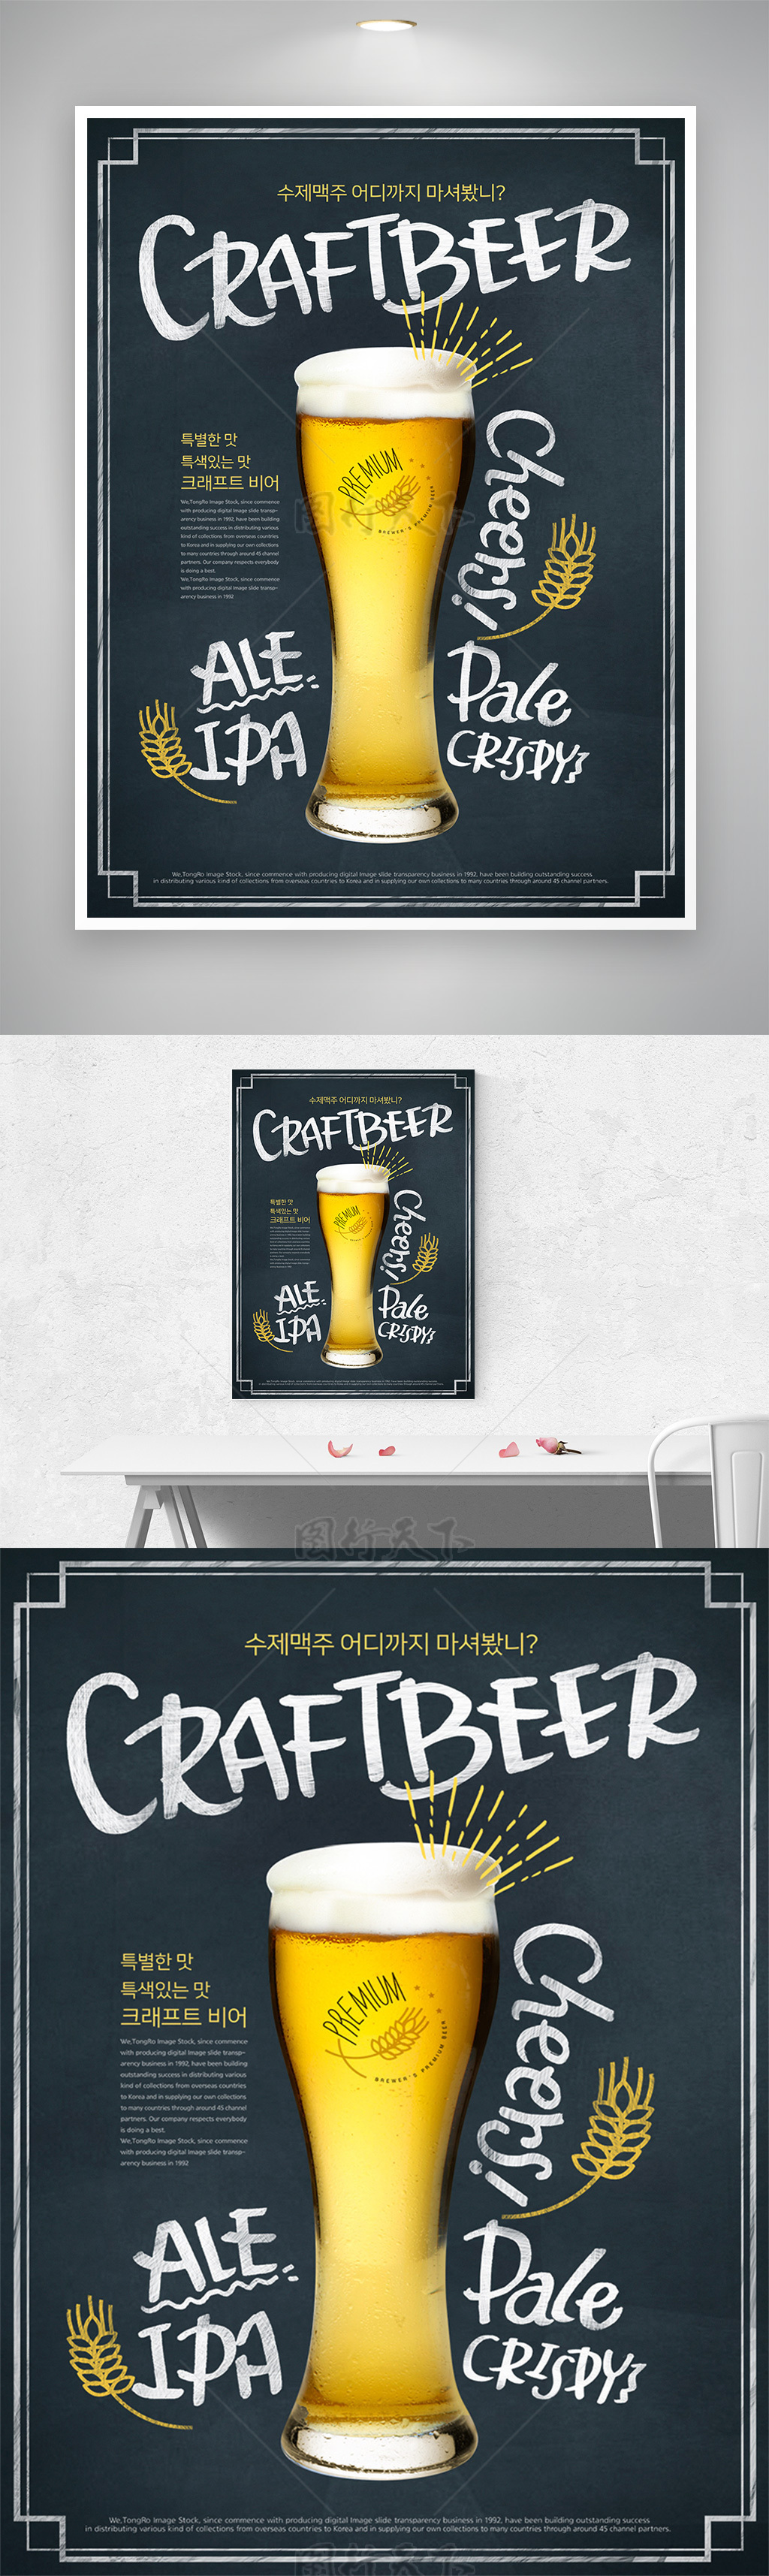 冷饮店啤酒促销宣传海报模板